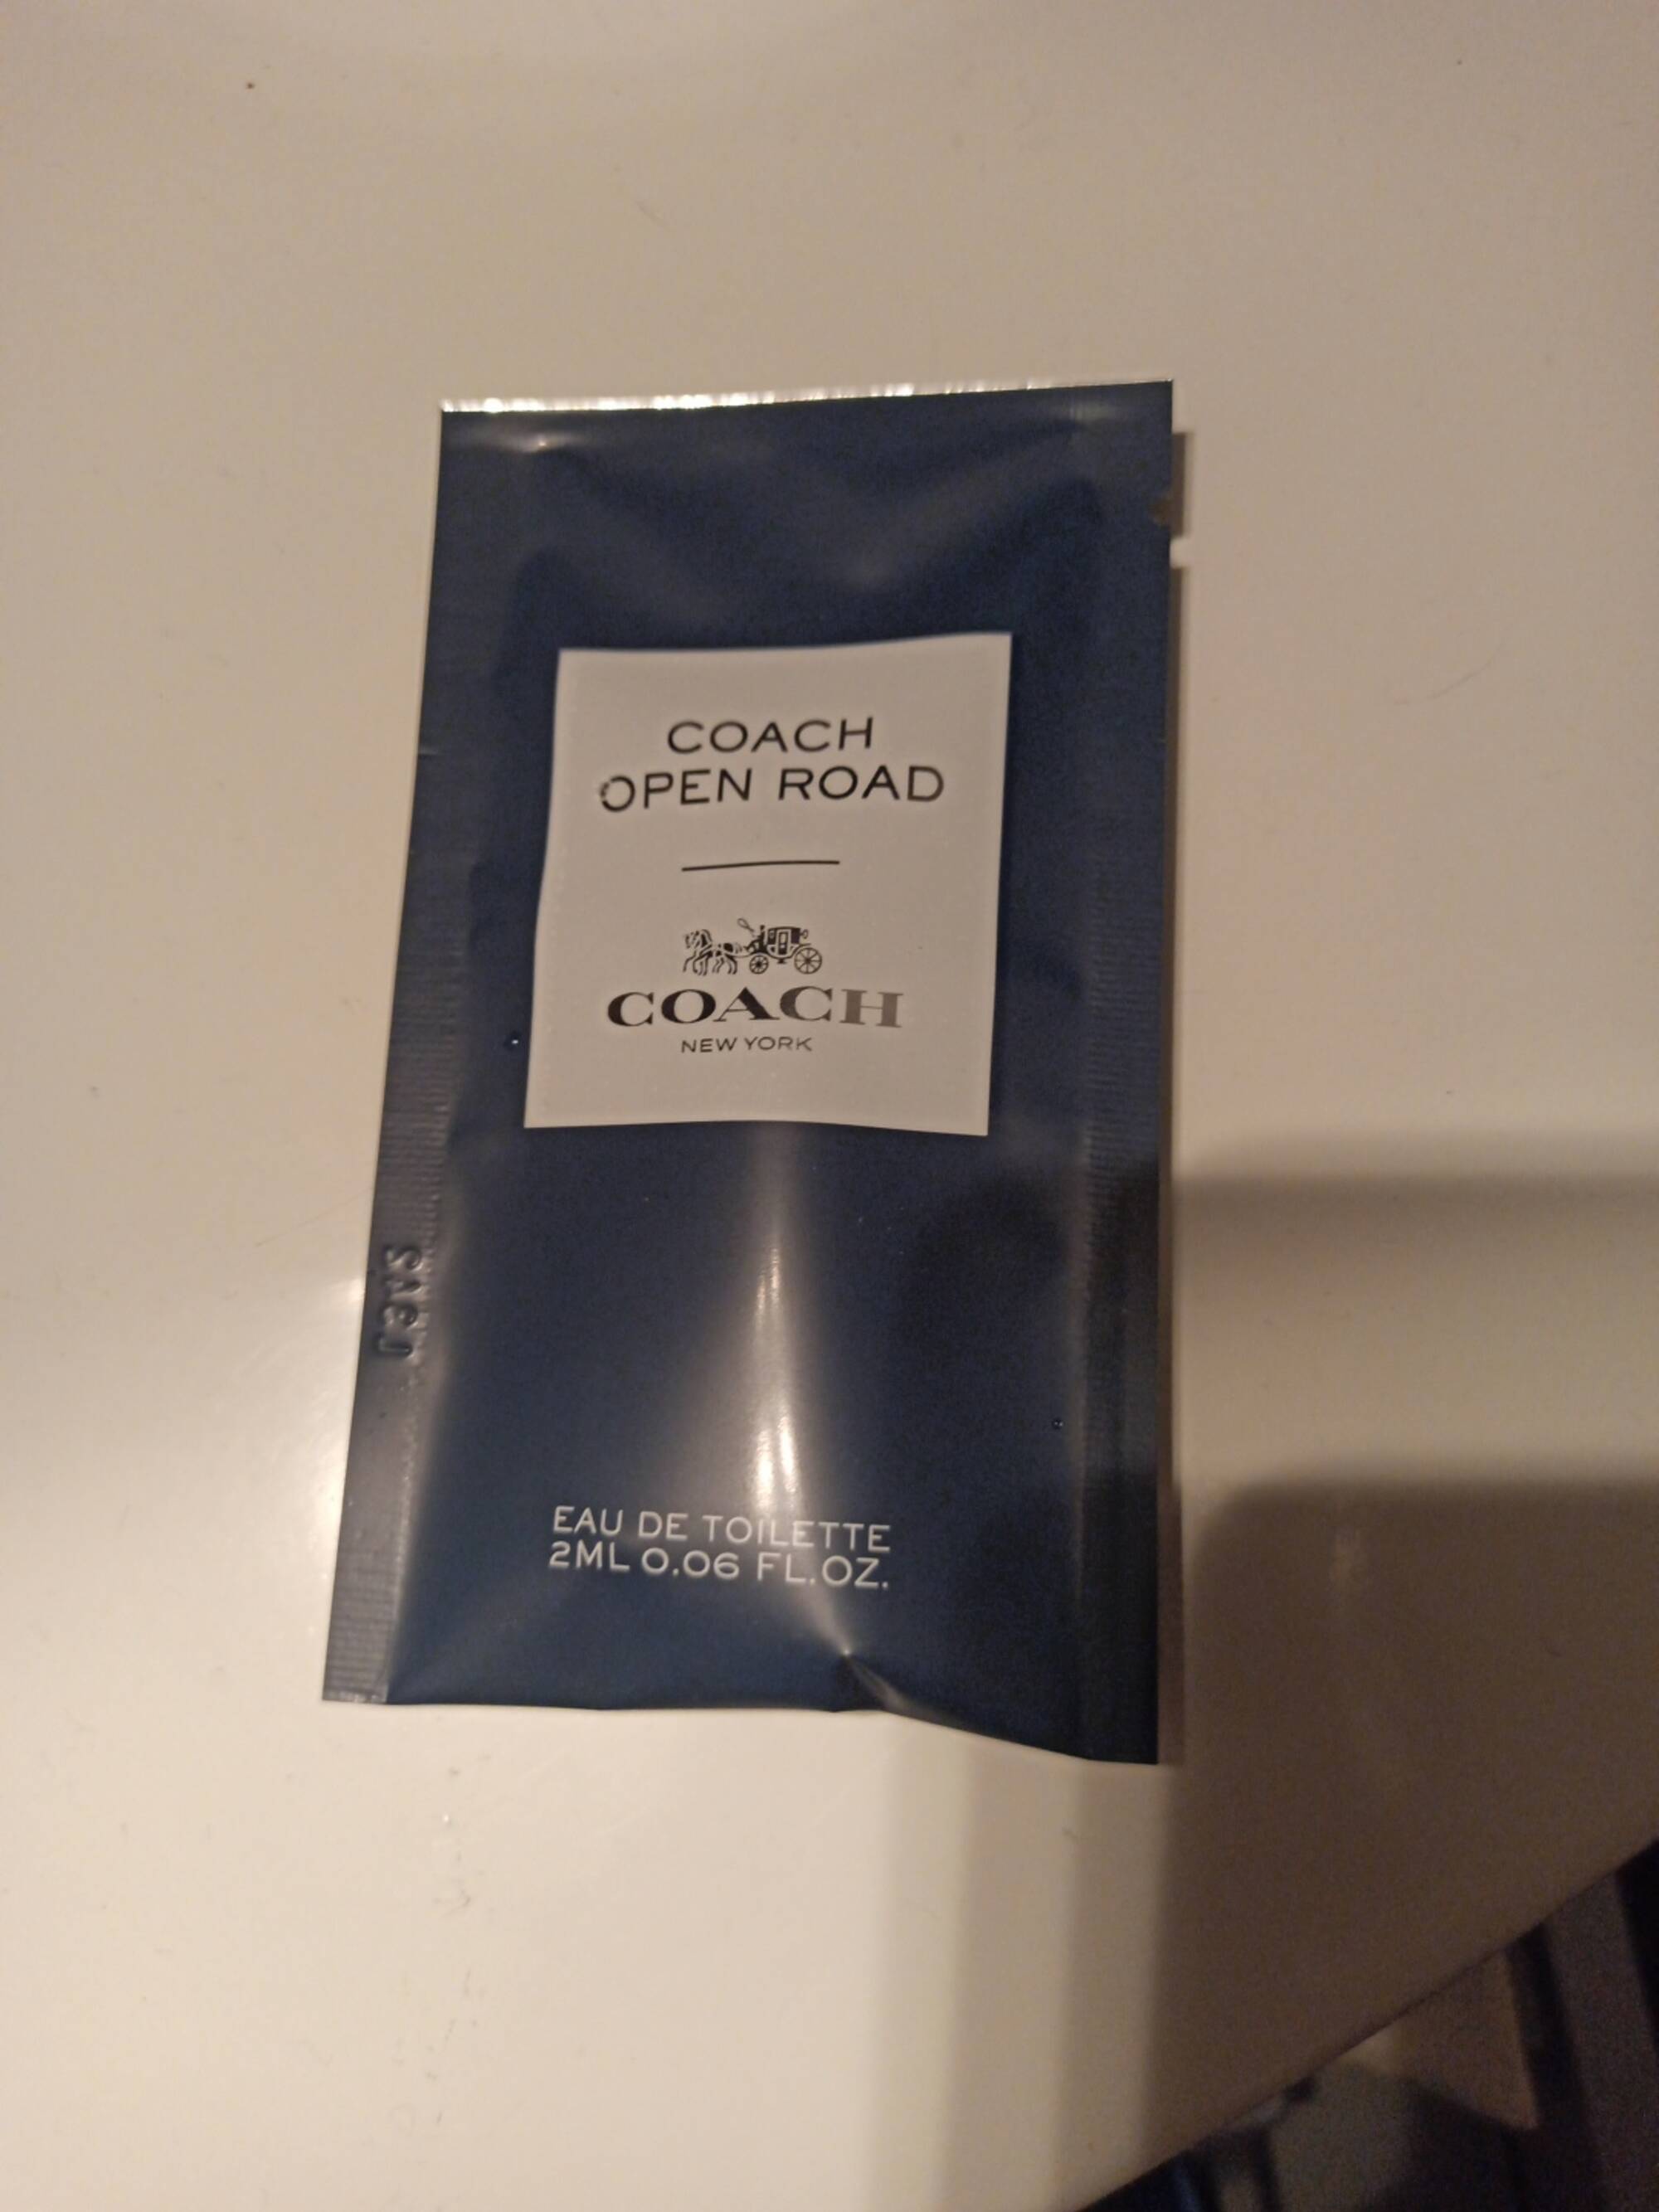 COACH - Coach open road - Eau de toilette